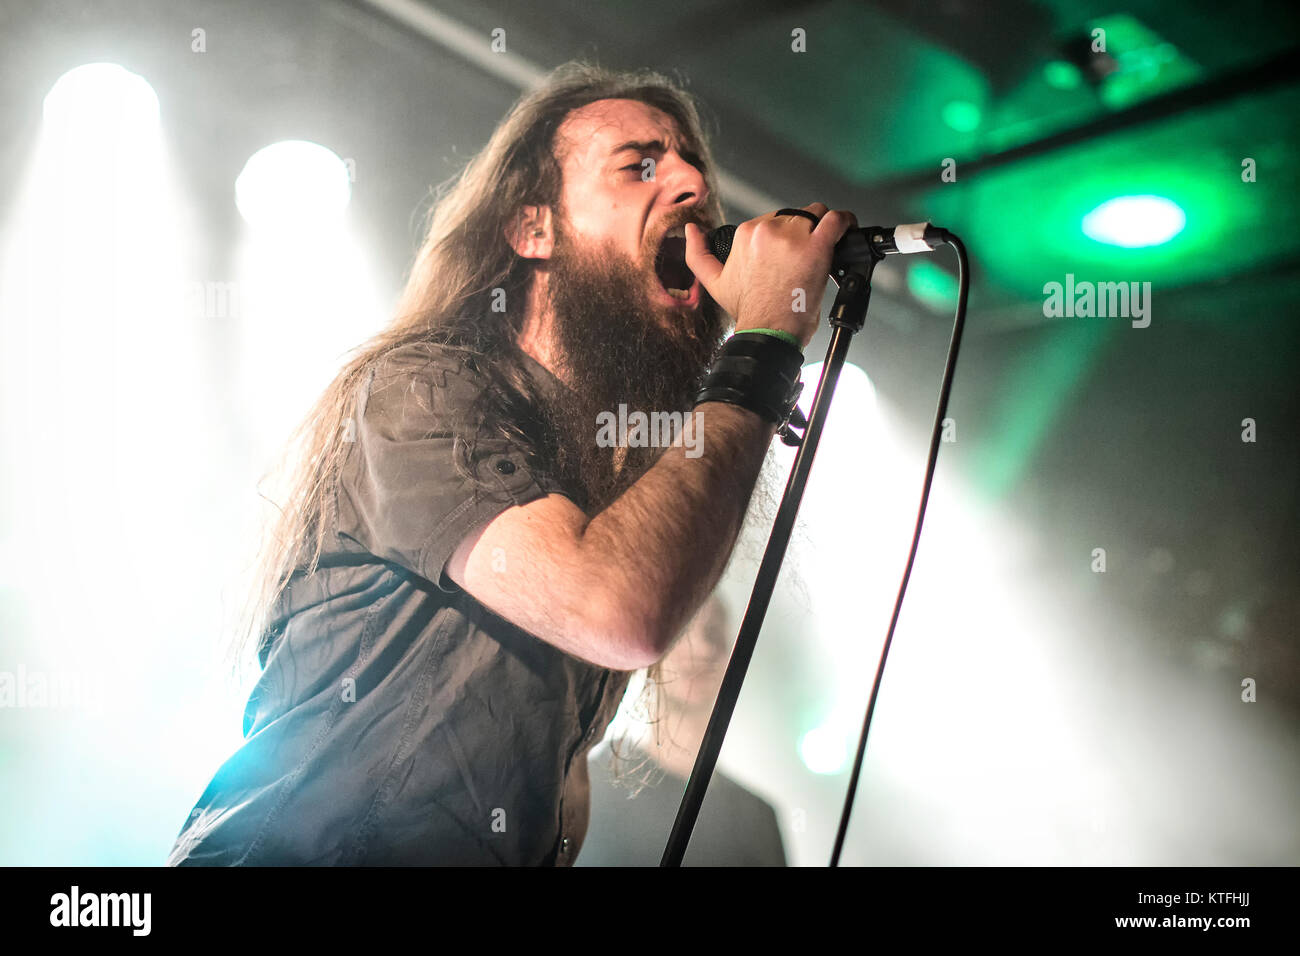 Le groupe de doom metal italien Rives de Null effectue un concert live à John Dee dans le cadre du festival Inferno Metal Festival 2016 à Oslo. Ici le chanteur Davide Straccione est vu sur scène. La Norvège, 24/03 2016. Banque D'Images